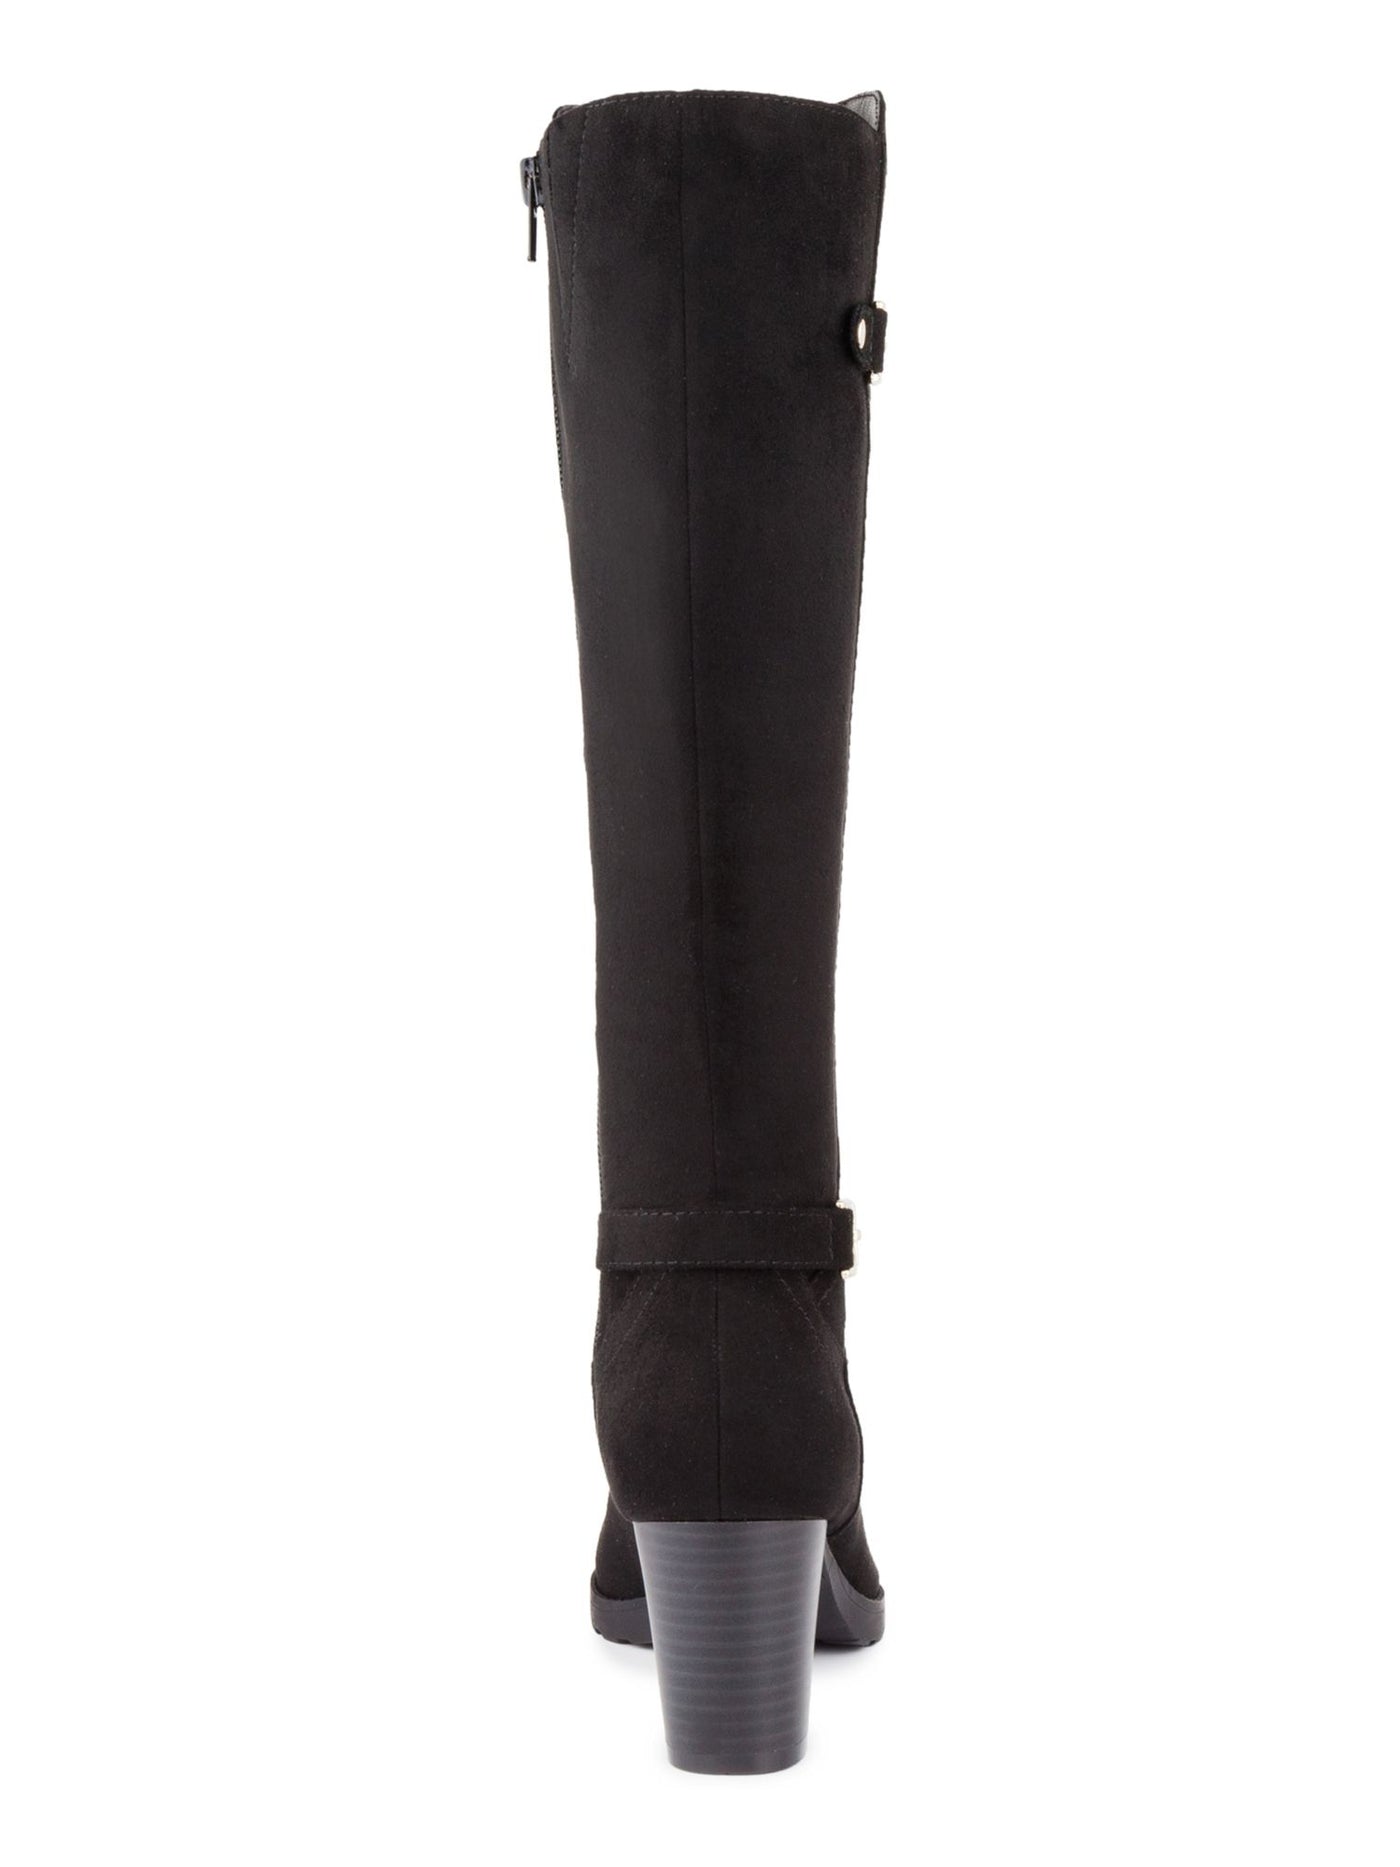 KAREN SCOTT Womens Black Buckle Hardware Almond Toe Block Heel Zip-Up Dress Boots 7.5